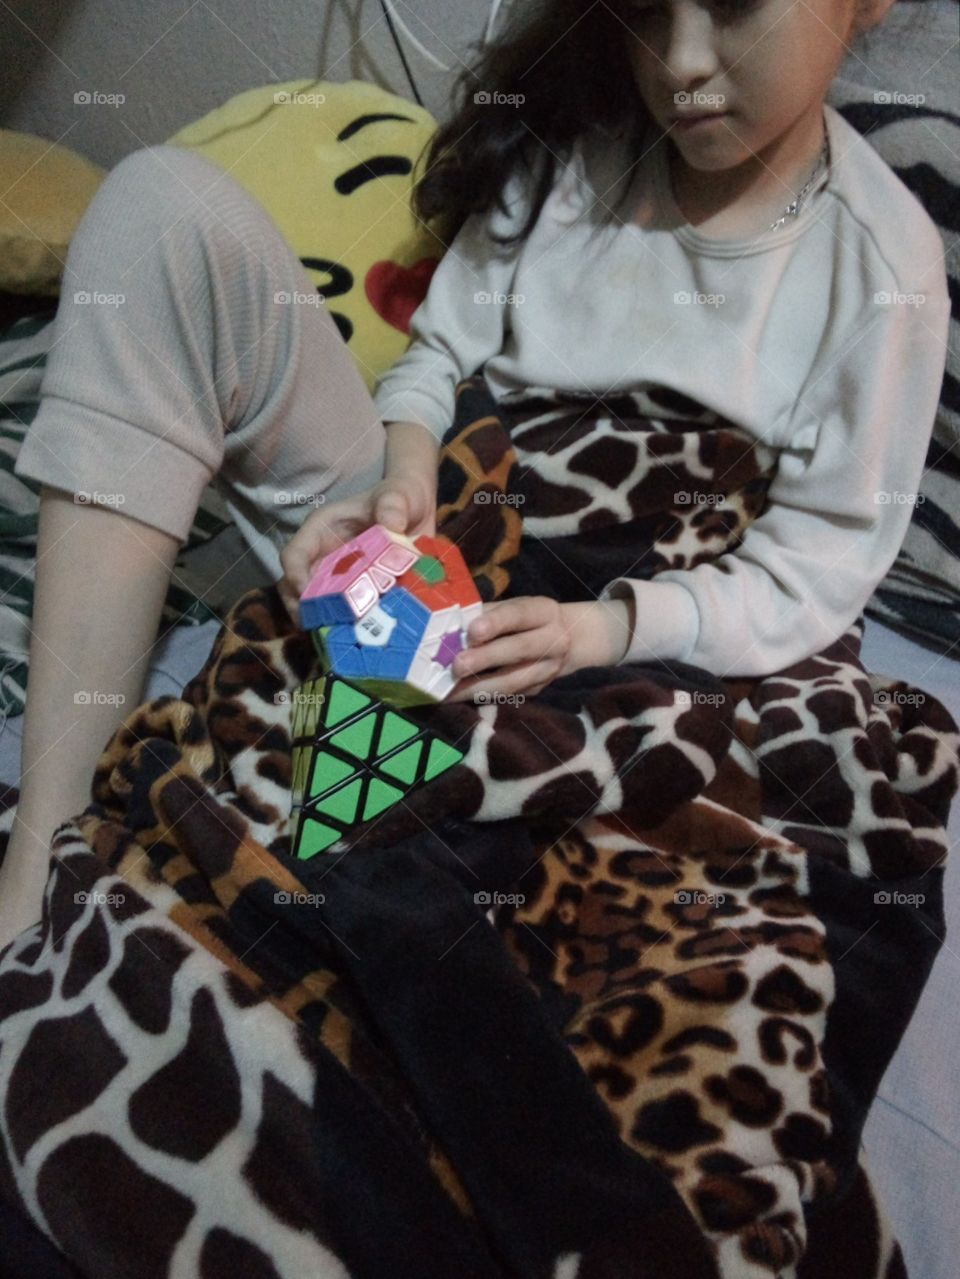 niña jugando cubo Rubik de varias formas y colores tapada con cobija mientras hace frío... en pijama.